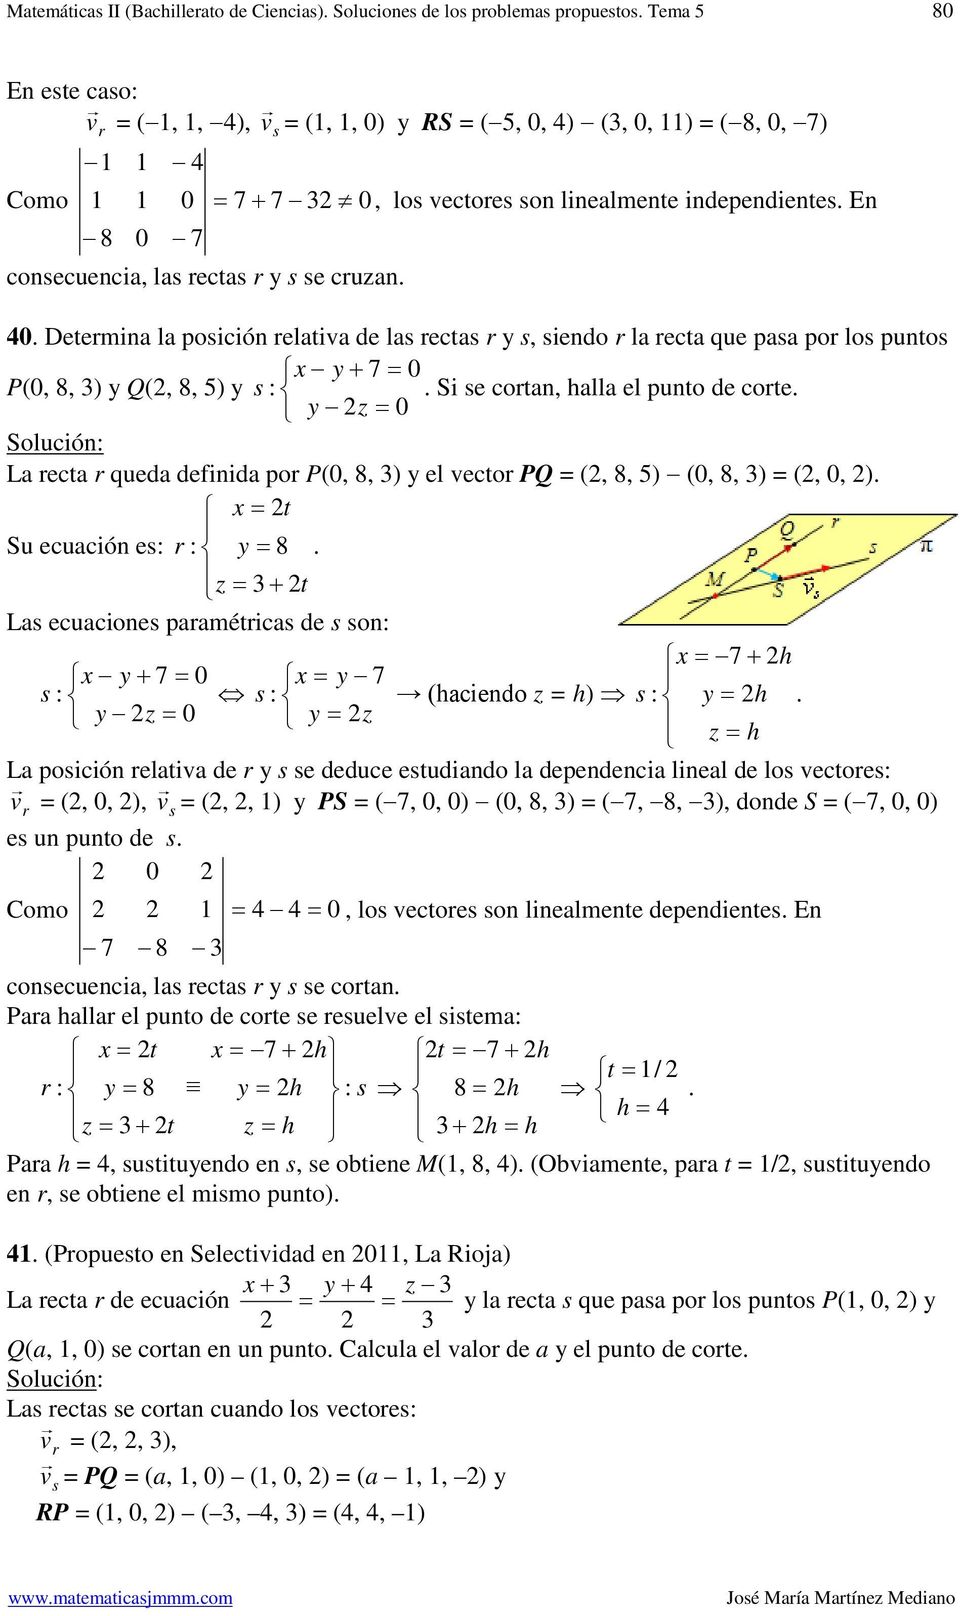 definida po P(,, ) el veco PQ (,, ) (,, ) (,, ) Su ecuación es Las ecuaciones paaméicas de s son s s (aciendo ) s La posición elaiva de s se deduce esudiando la dependencia lineal de los vecoes v (,,